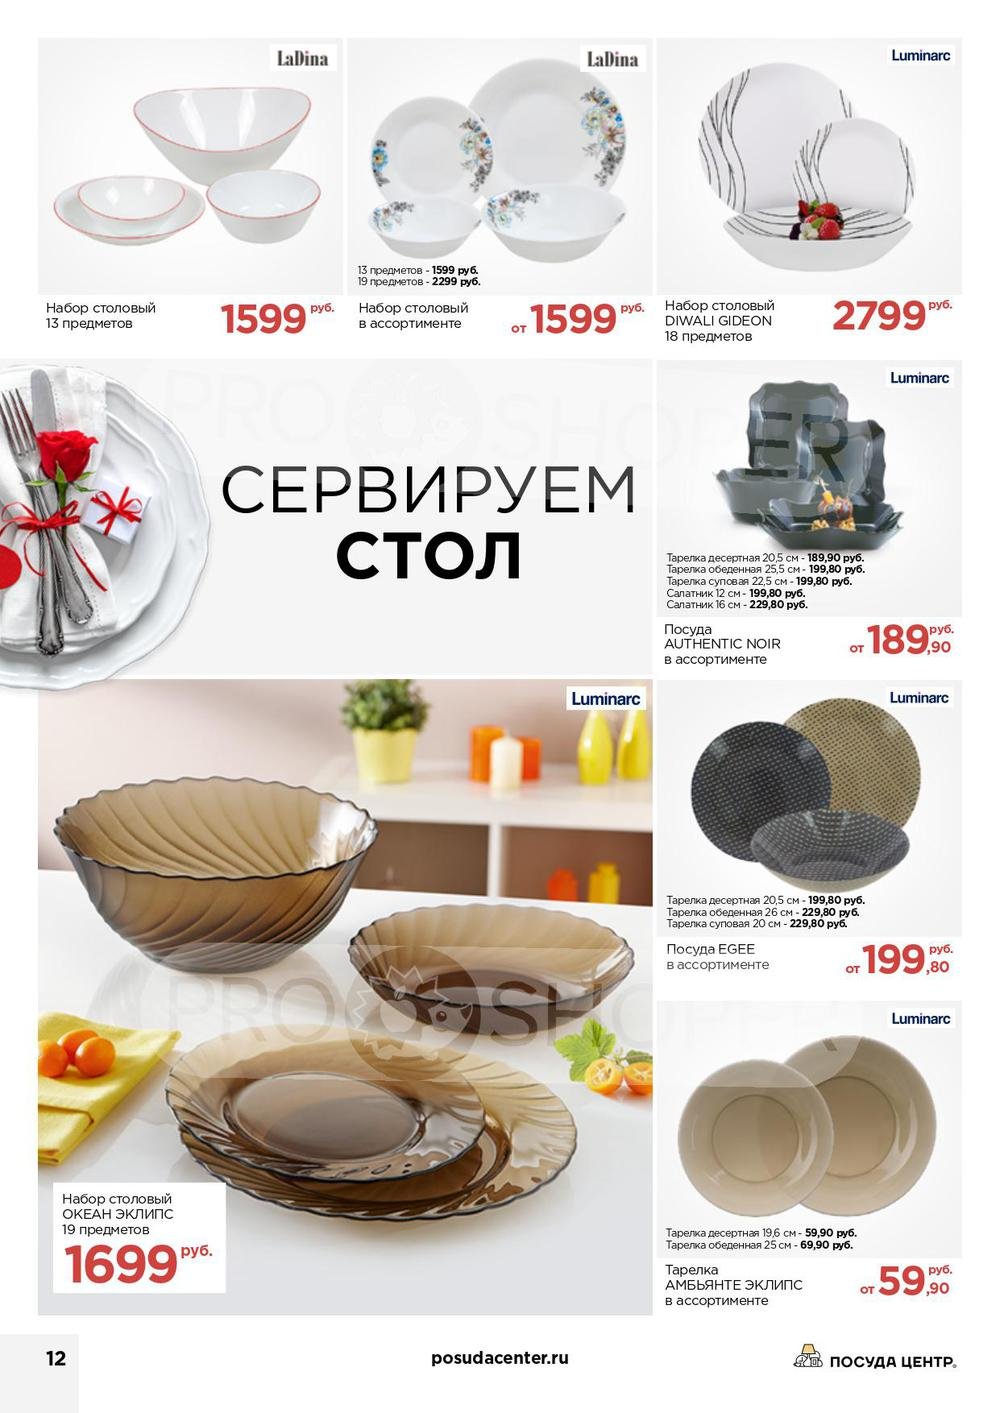 Барнаул посуда центр каталог товаров с ценами. Стокманн тарелки набор. Стокманн португальская посуда. Каталог посуды. Посуда ассортимент.